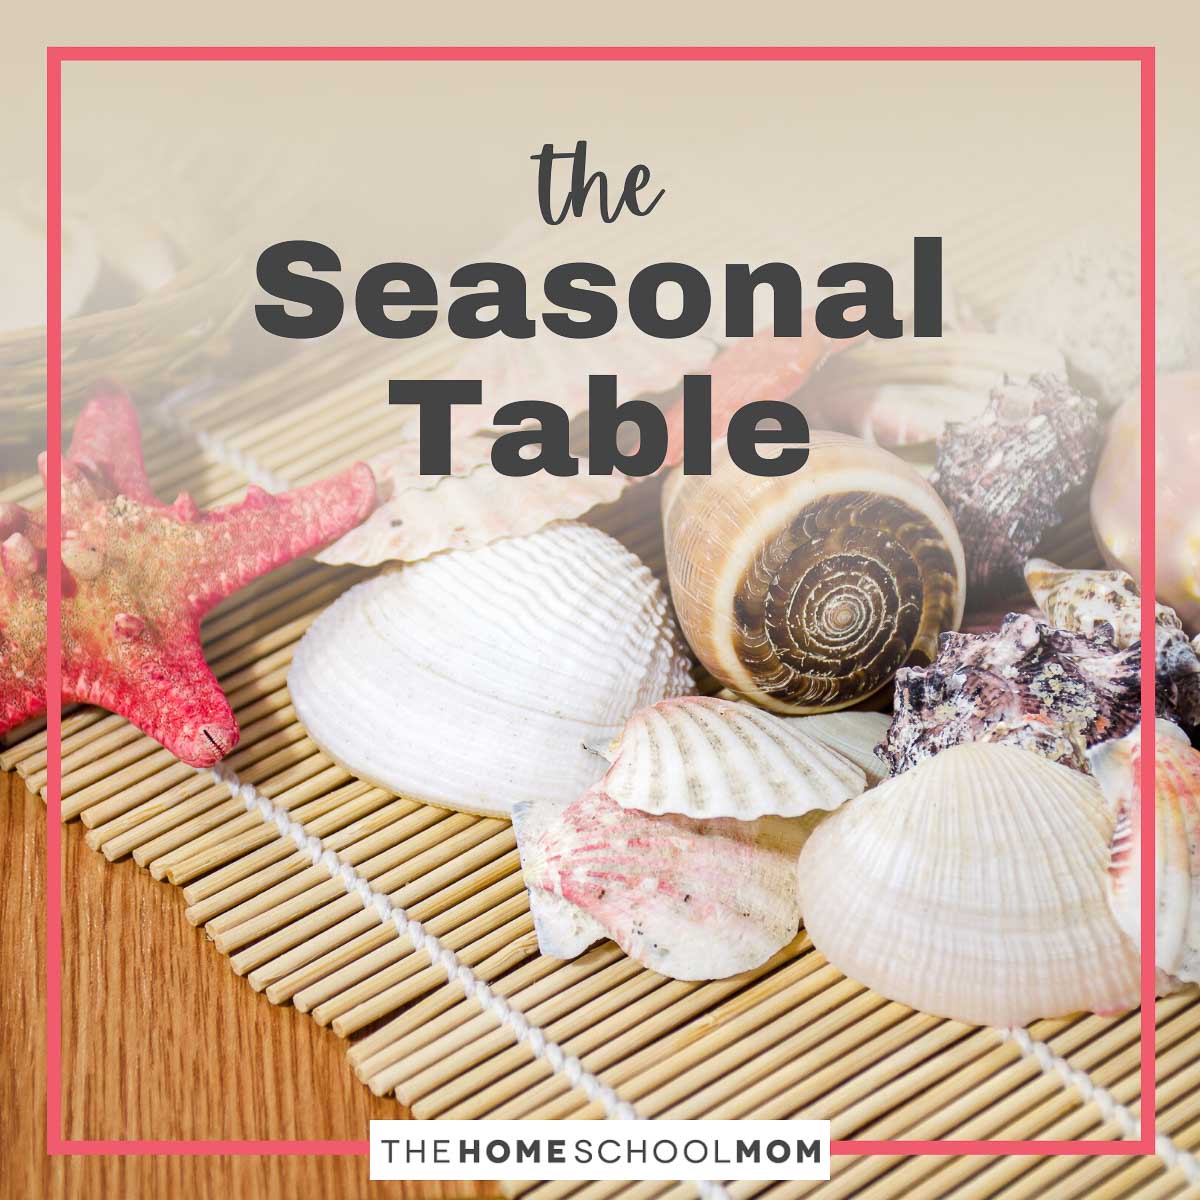 The Seasonal Table